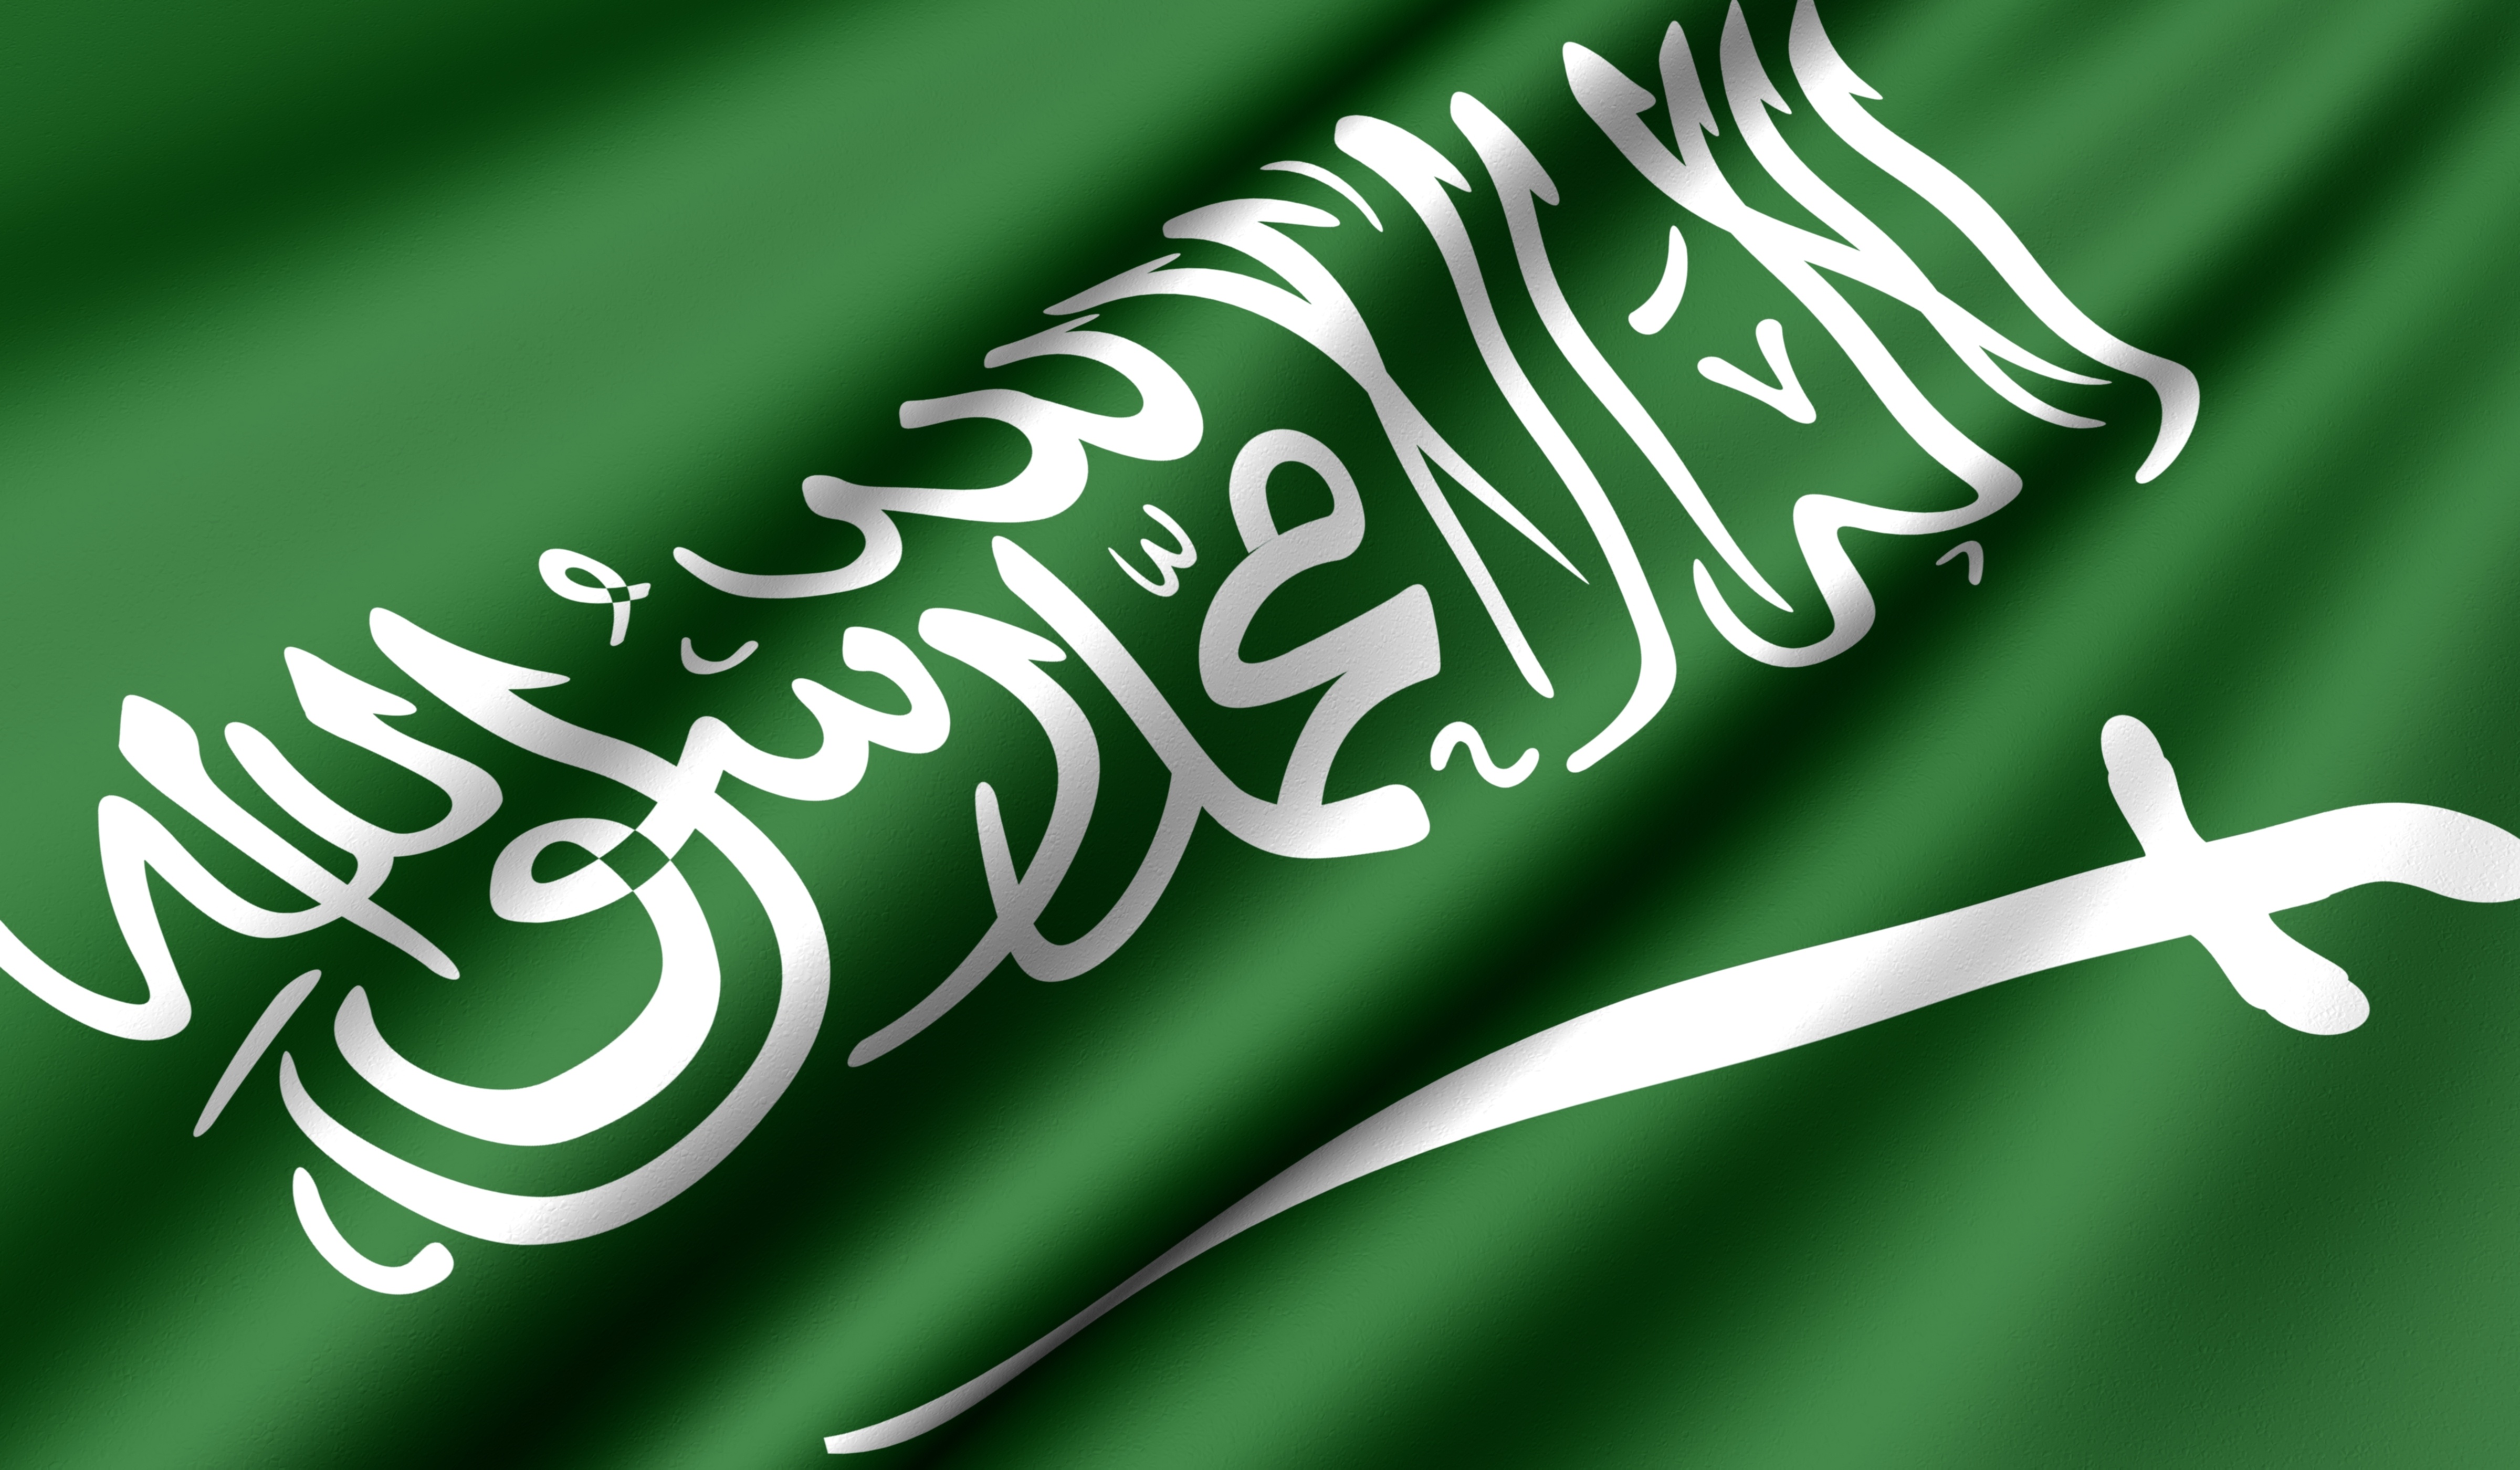 المملكة الثانية عربيًا في مؤشر الابتكار العالمي 2016